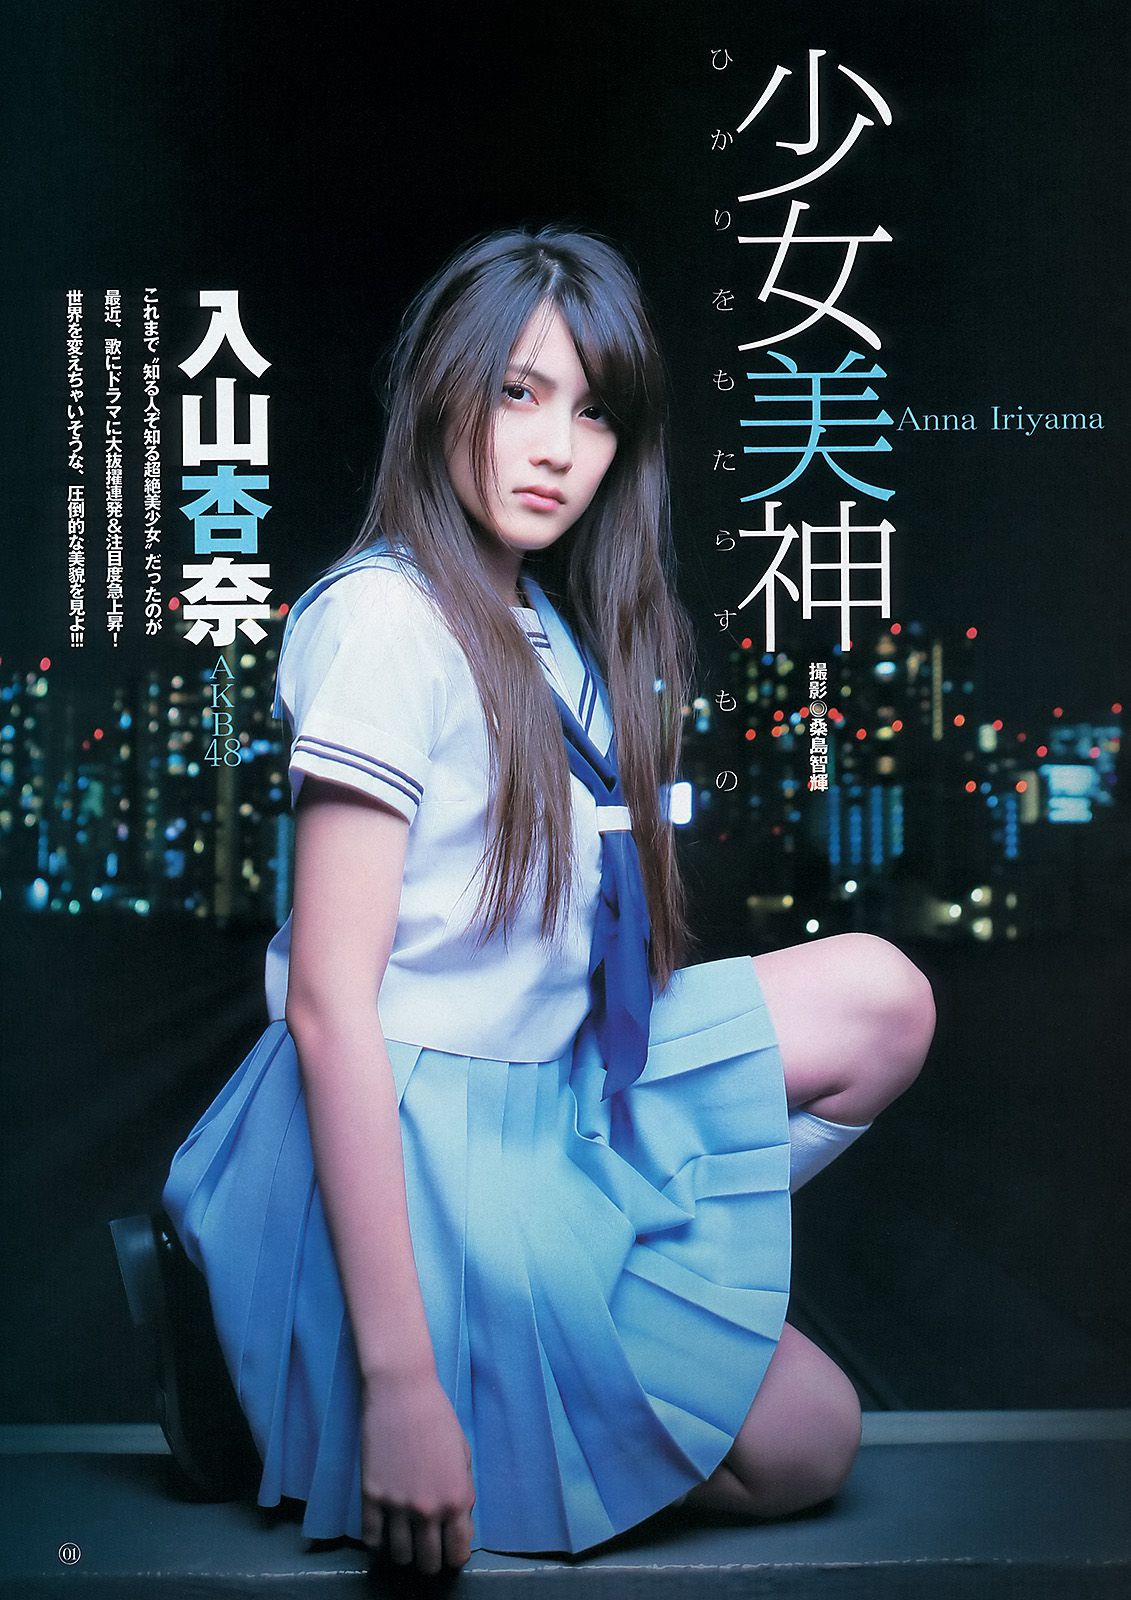 AKB48 入山杏奈 [週刊ヤングジャンプ] 2012年No.49 写真杂志/(12P)